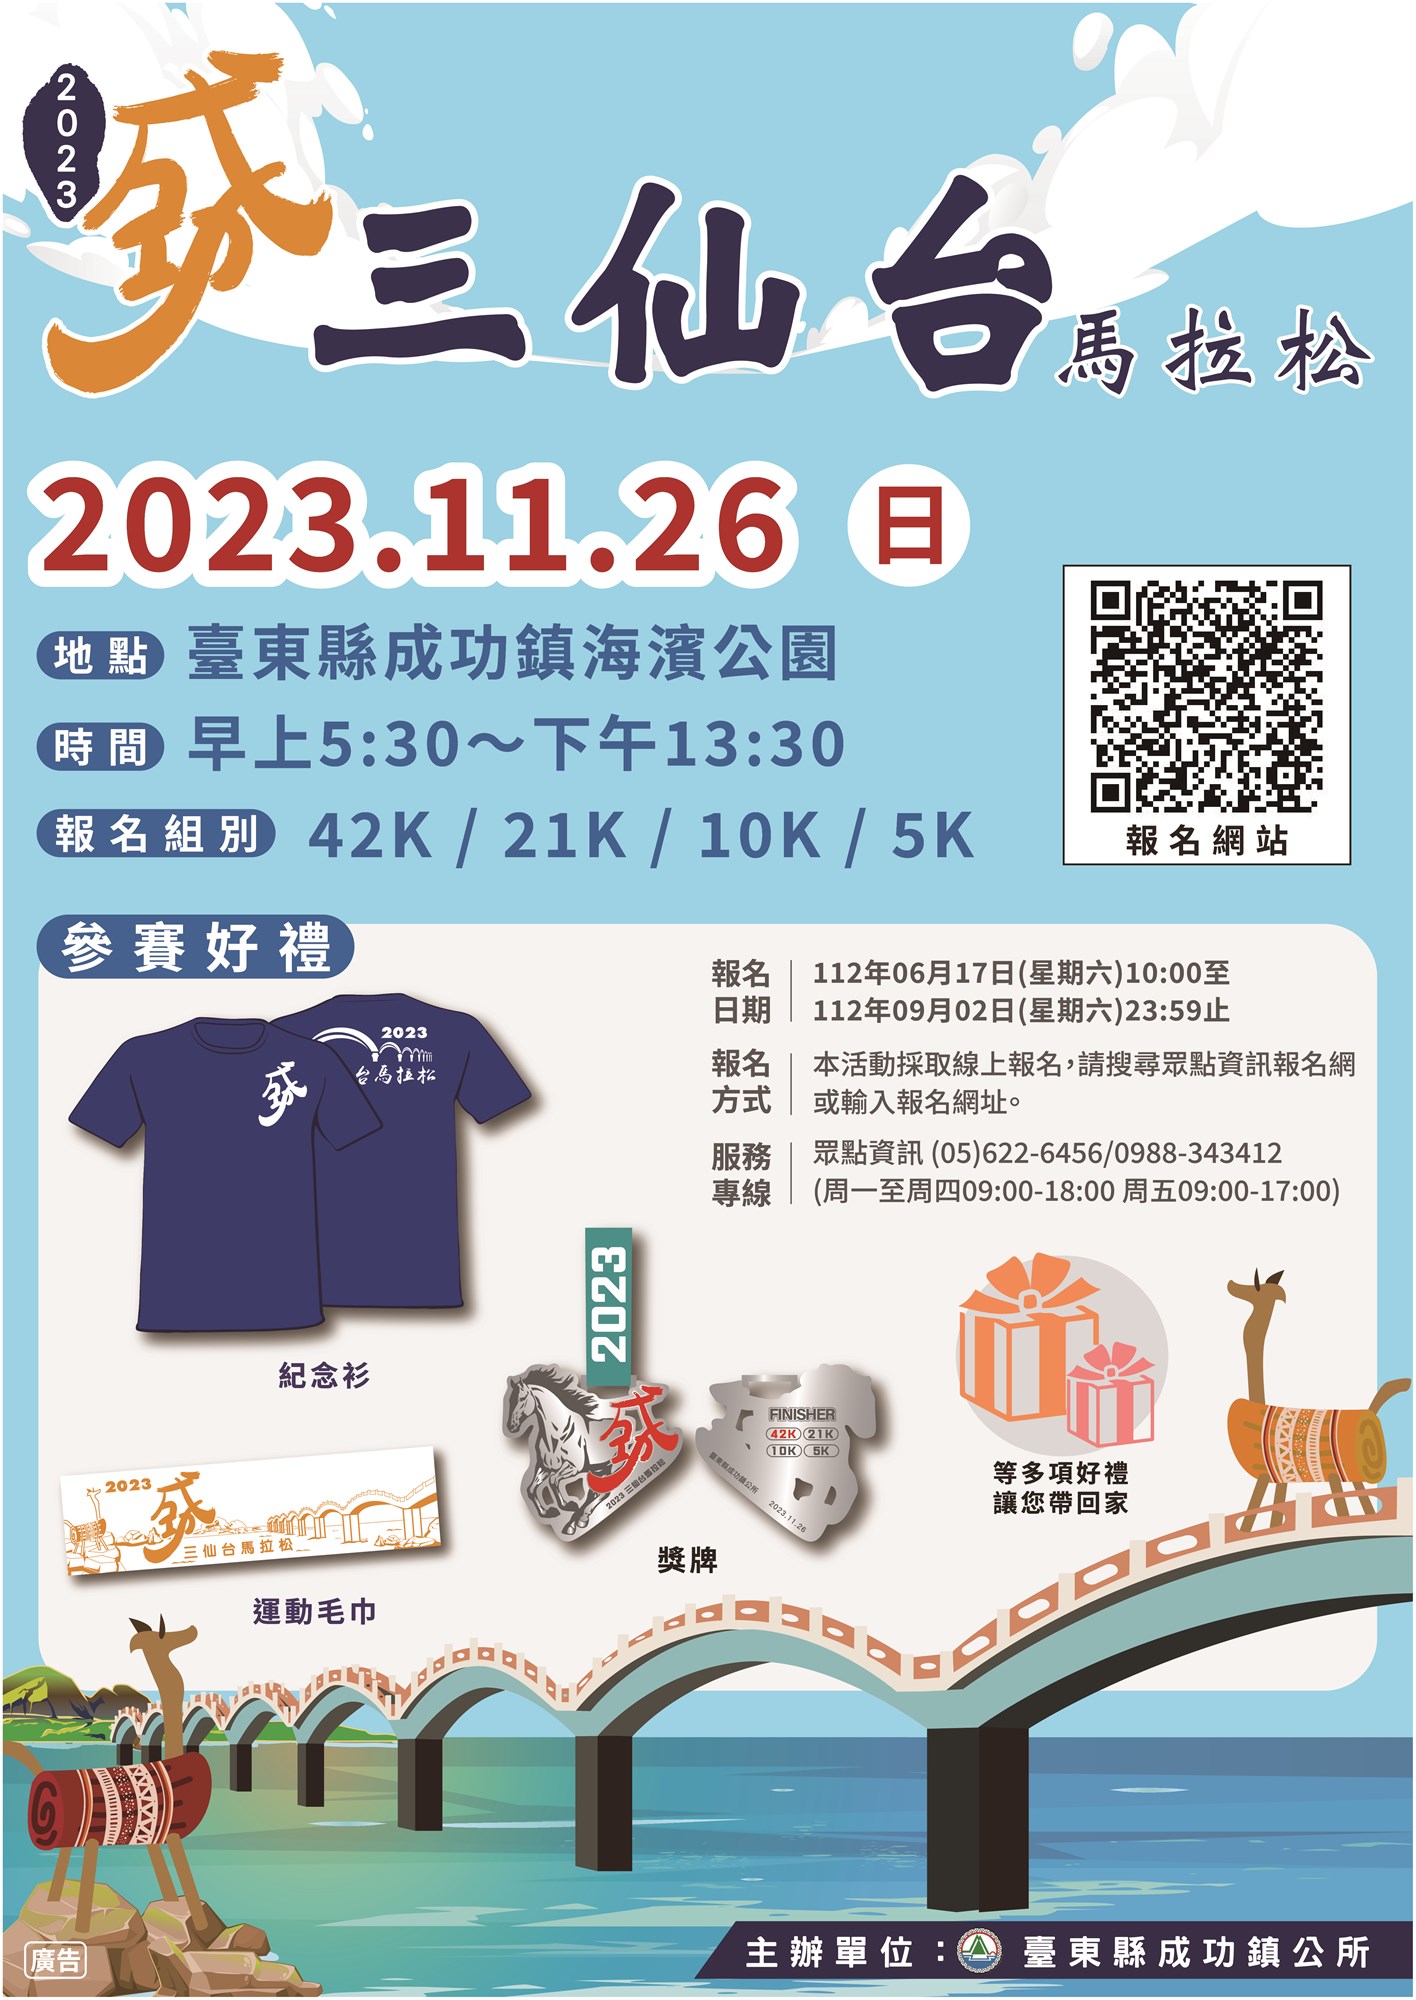 Sự kiện thành công 2023 Sanxiantai Marathon của Đài Đông